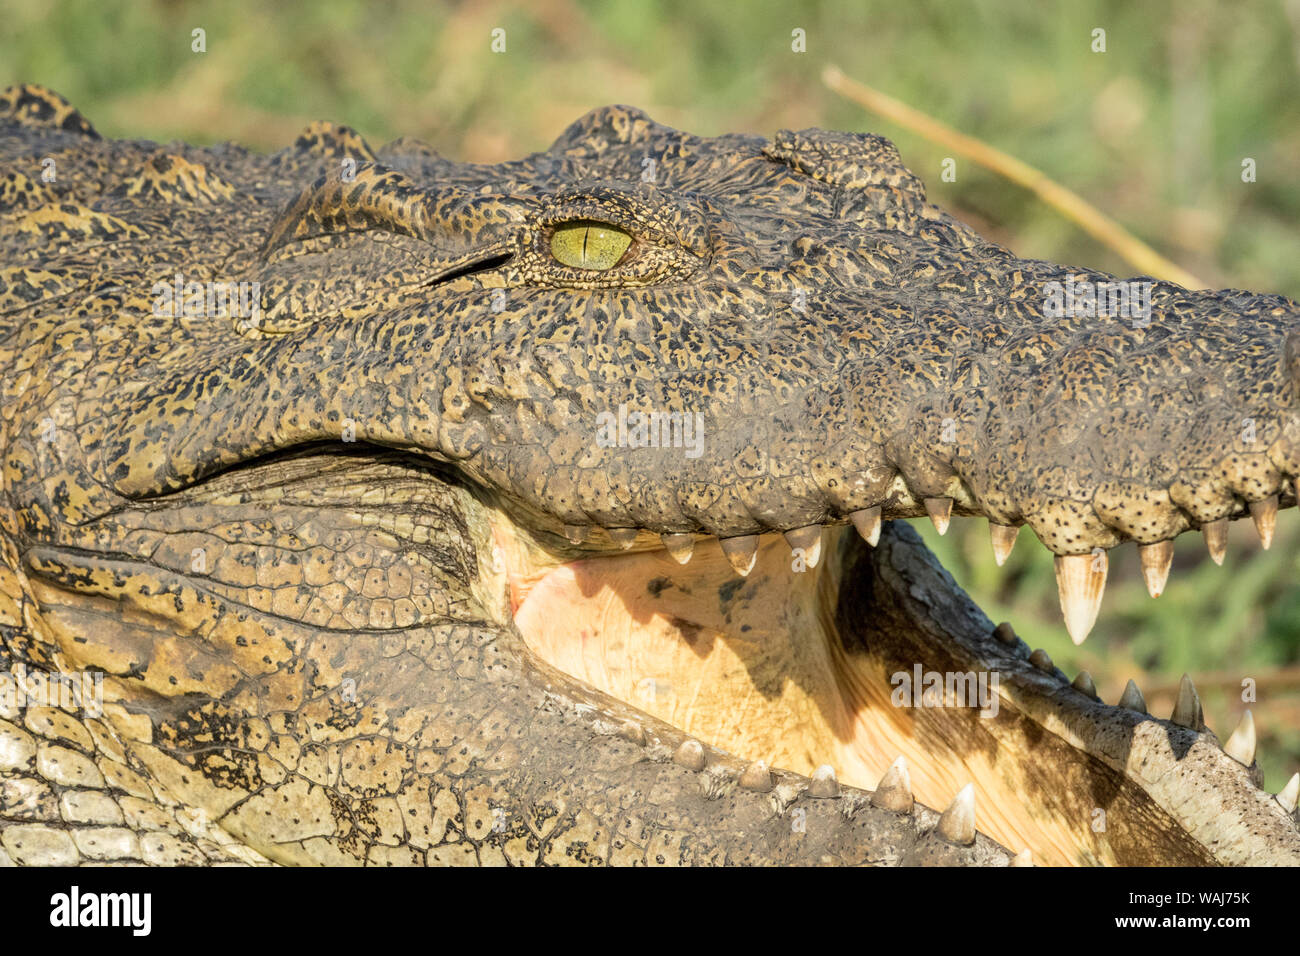 L'Afrique, Botswana, Chobe National Park. Soleil de crocodiles dans l'herbe. En tant que crédit : Wendy Kaveney Jaynes / Galerie / DanitaDelimont.com Banque D'Images